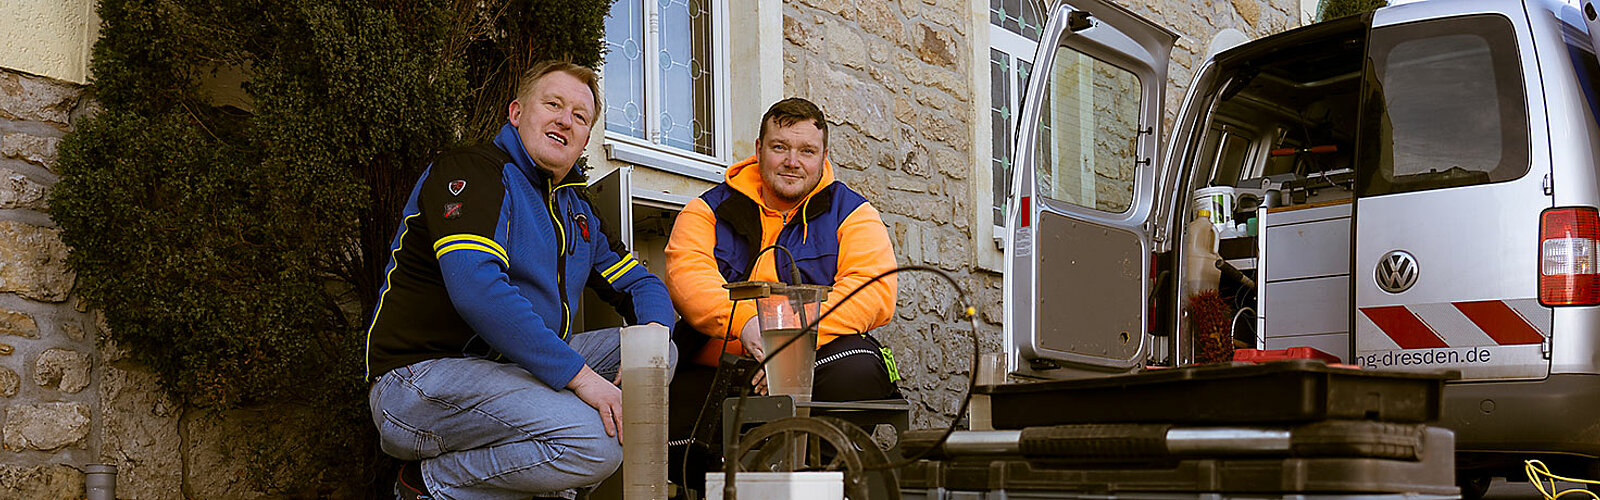 Das Bild zeigt einen Mitarbeiter der Stadtentwässerung Dresden GmbH, der sich um die Kleinkläranlage eines Kunden kümmert.